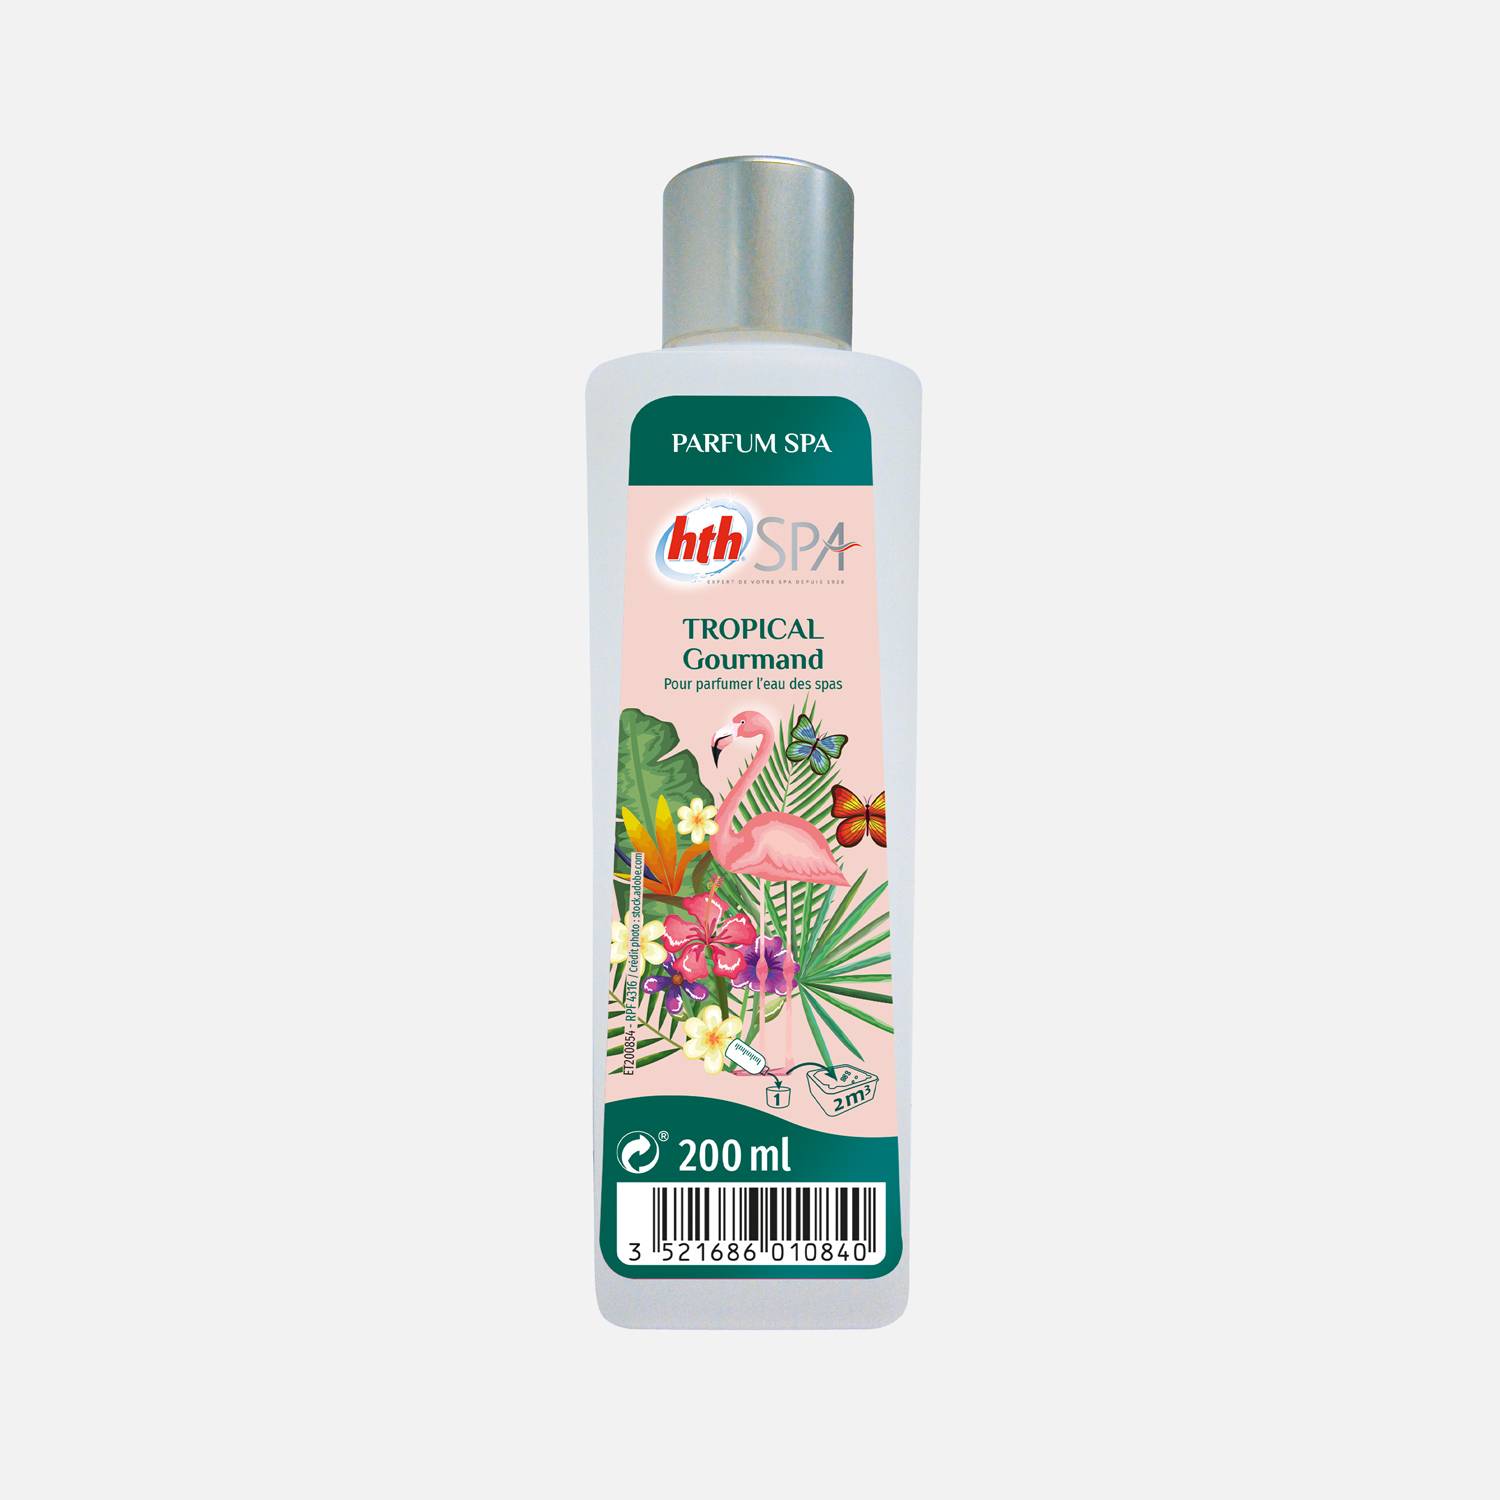 Parfum tropical pour SPA 200mL – HTH, odeur gourmande, parfum d'origine naturelle, élaboré en France   Photo1